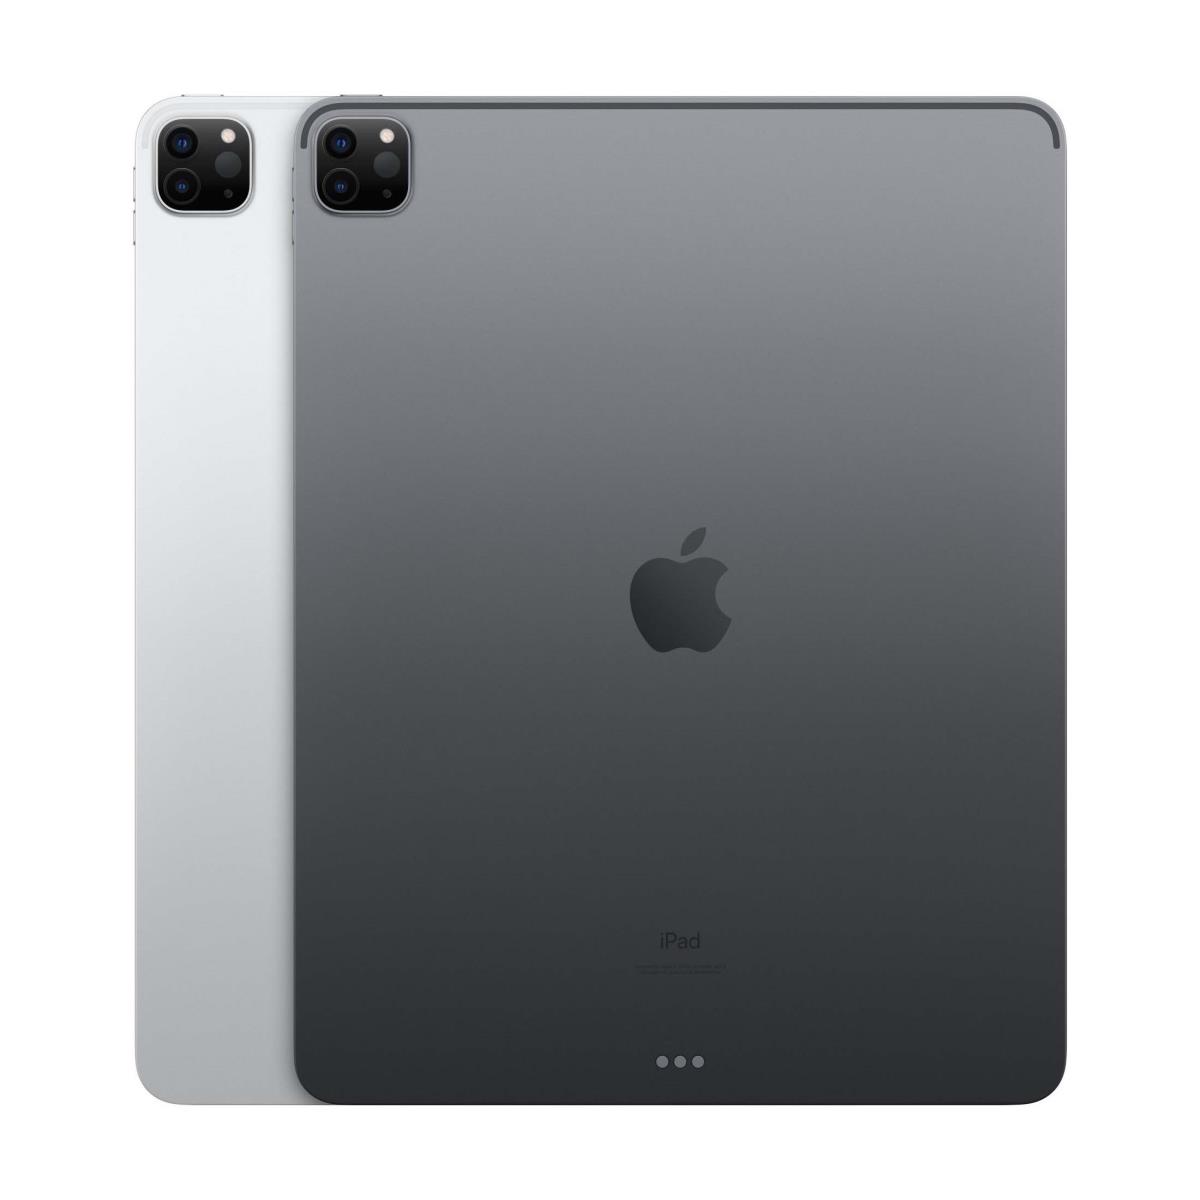 Apple 12.9 inch iPad Pro (Wi-Fi)